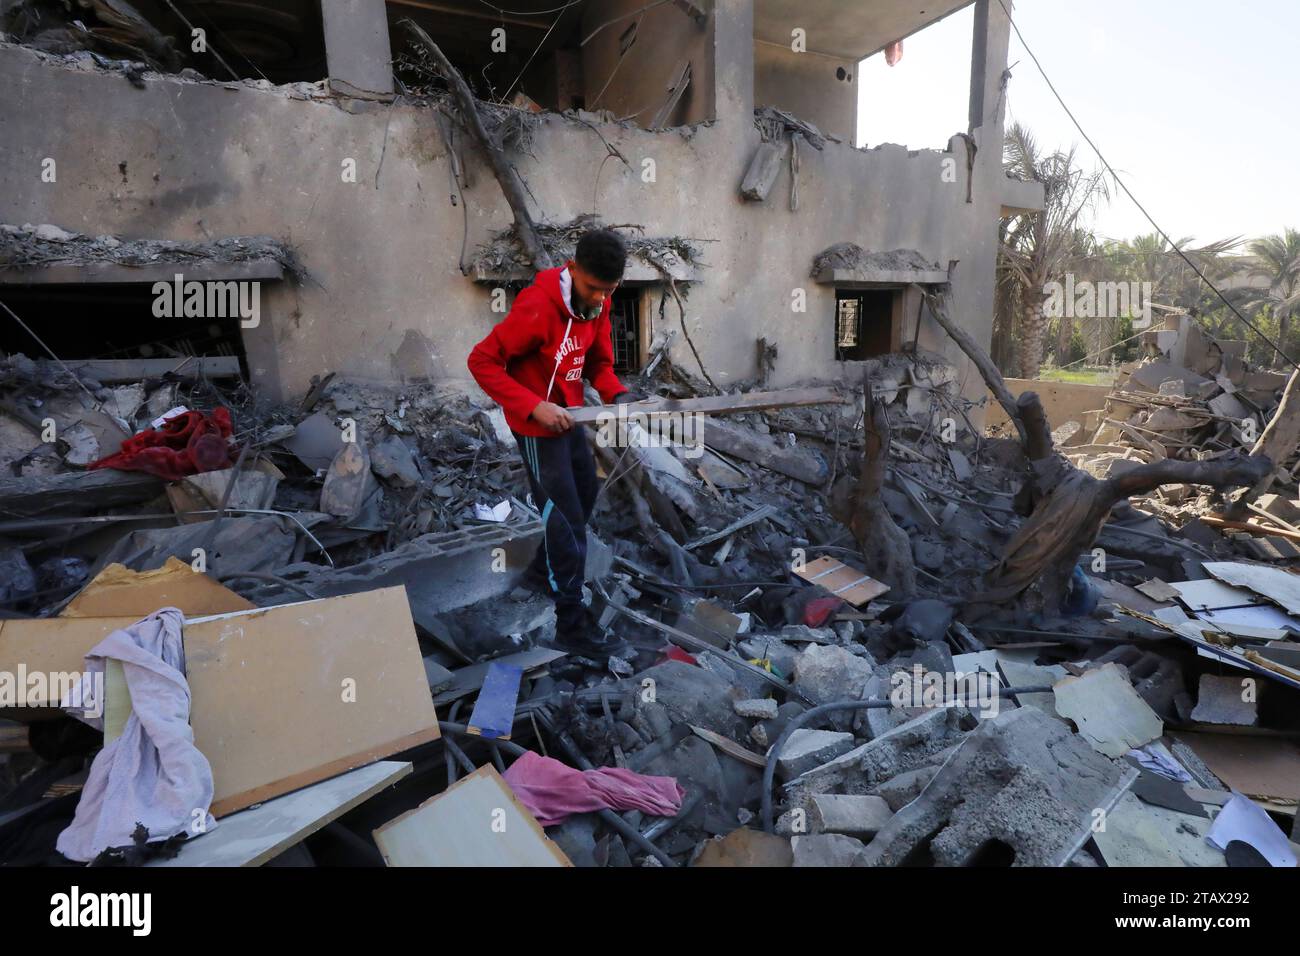 Palästinenser suchen in den Ruinen eines Gebäudes nach einem israelischen Bombenanschlag in Nuseirat Palästinenser durchsuchen die Ruinen eines Gebäudes nach einem israelischen Bombenanschlag in Nuseirat am 3. Dezember 2023. Israel verübte am 3. Dezember tödliche Bombardements in Gaza, als internationale rufe nach mehr Schutz der Zivilbevölkerung und der Erneuerung eines abgelaufenen Waffenstillstands mit der militanten palästinensischen Gruppe Hamas lauteten. Foto: Naaman Omar apaimages Nusairat Gazastreifen Palästinensische Gebiete 031223 Nusairat NAA 002 Copyright: XapaimagesxNaamanxOmarxx Stockfoto